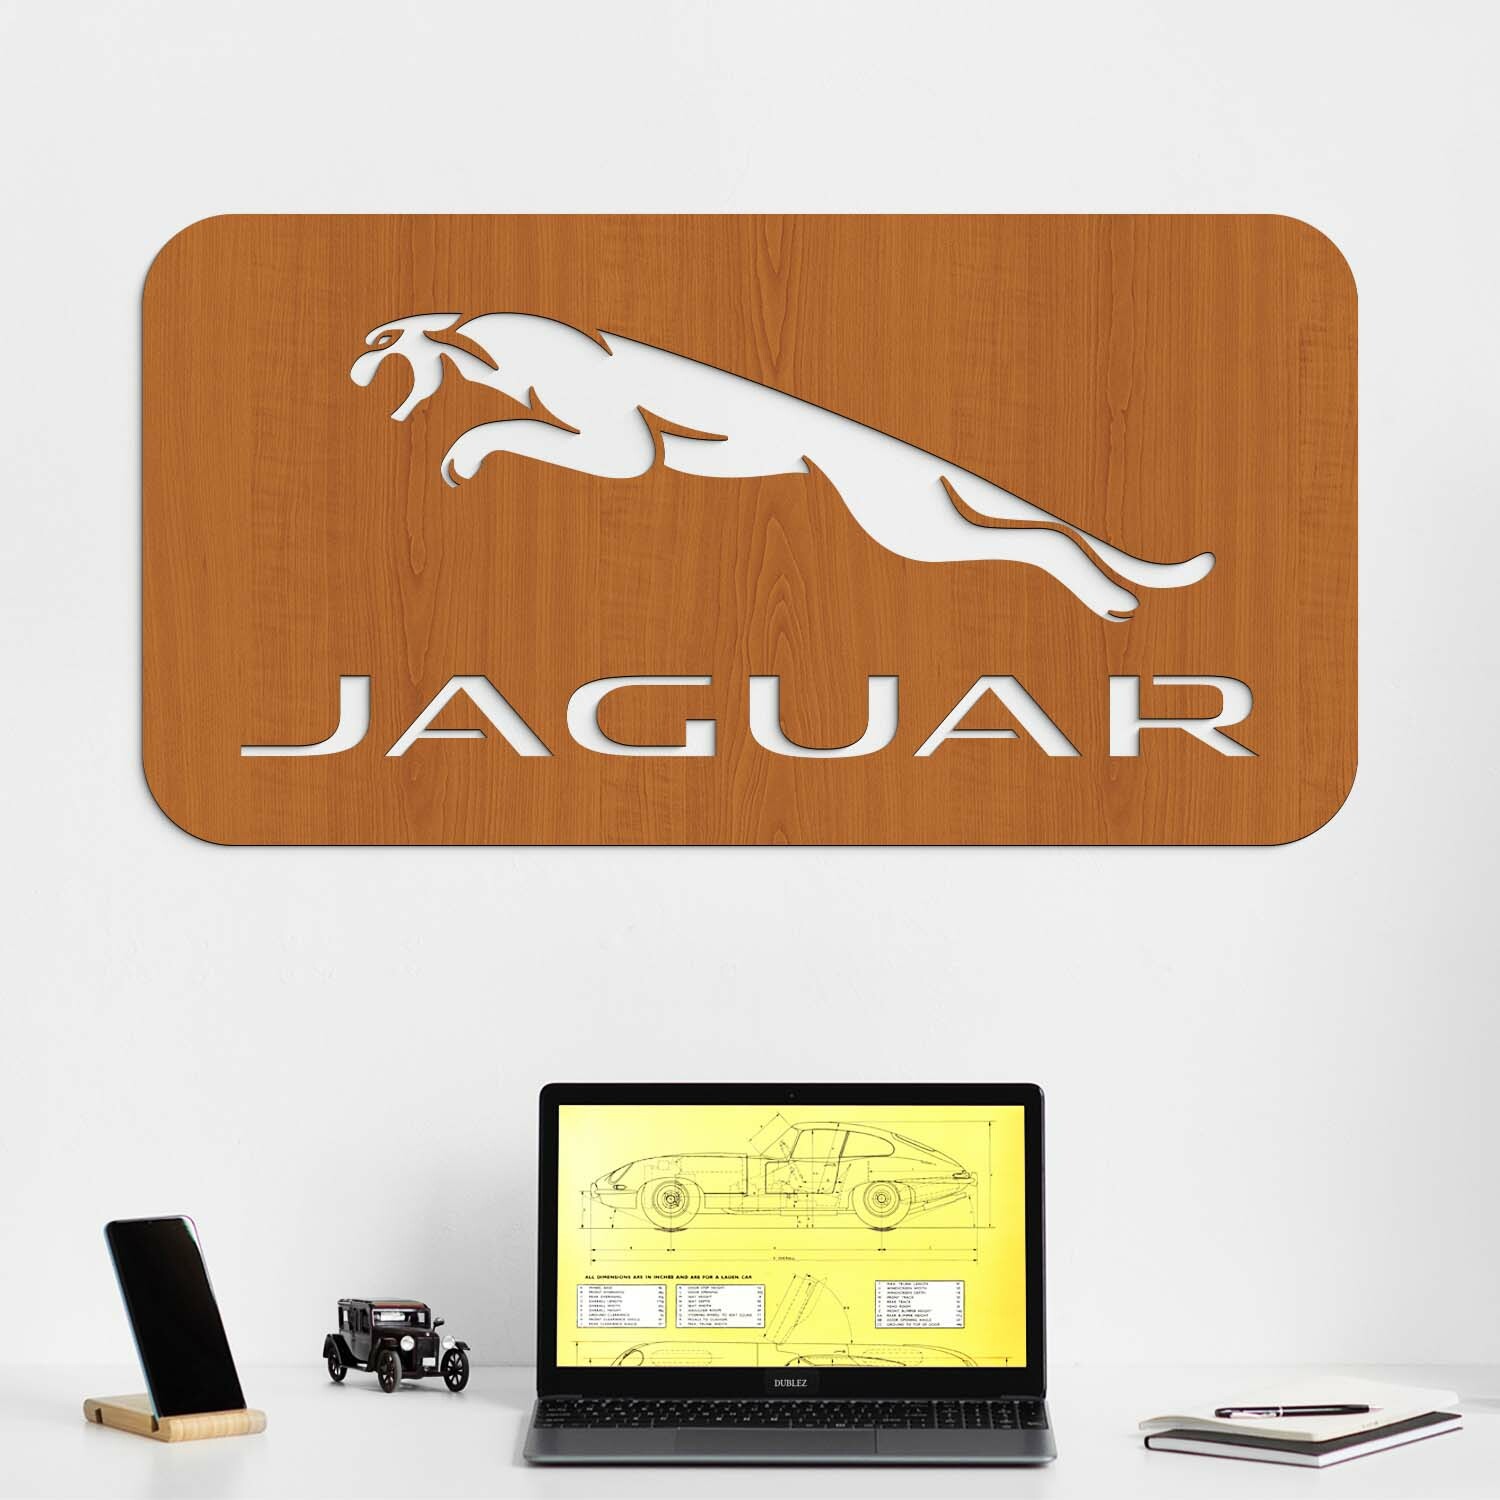 Drevený obraz - Logo auta Jaguar, Čerešňa